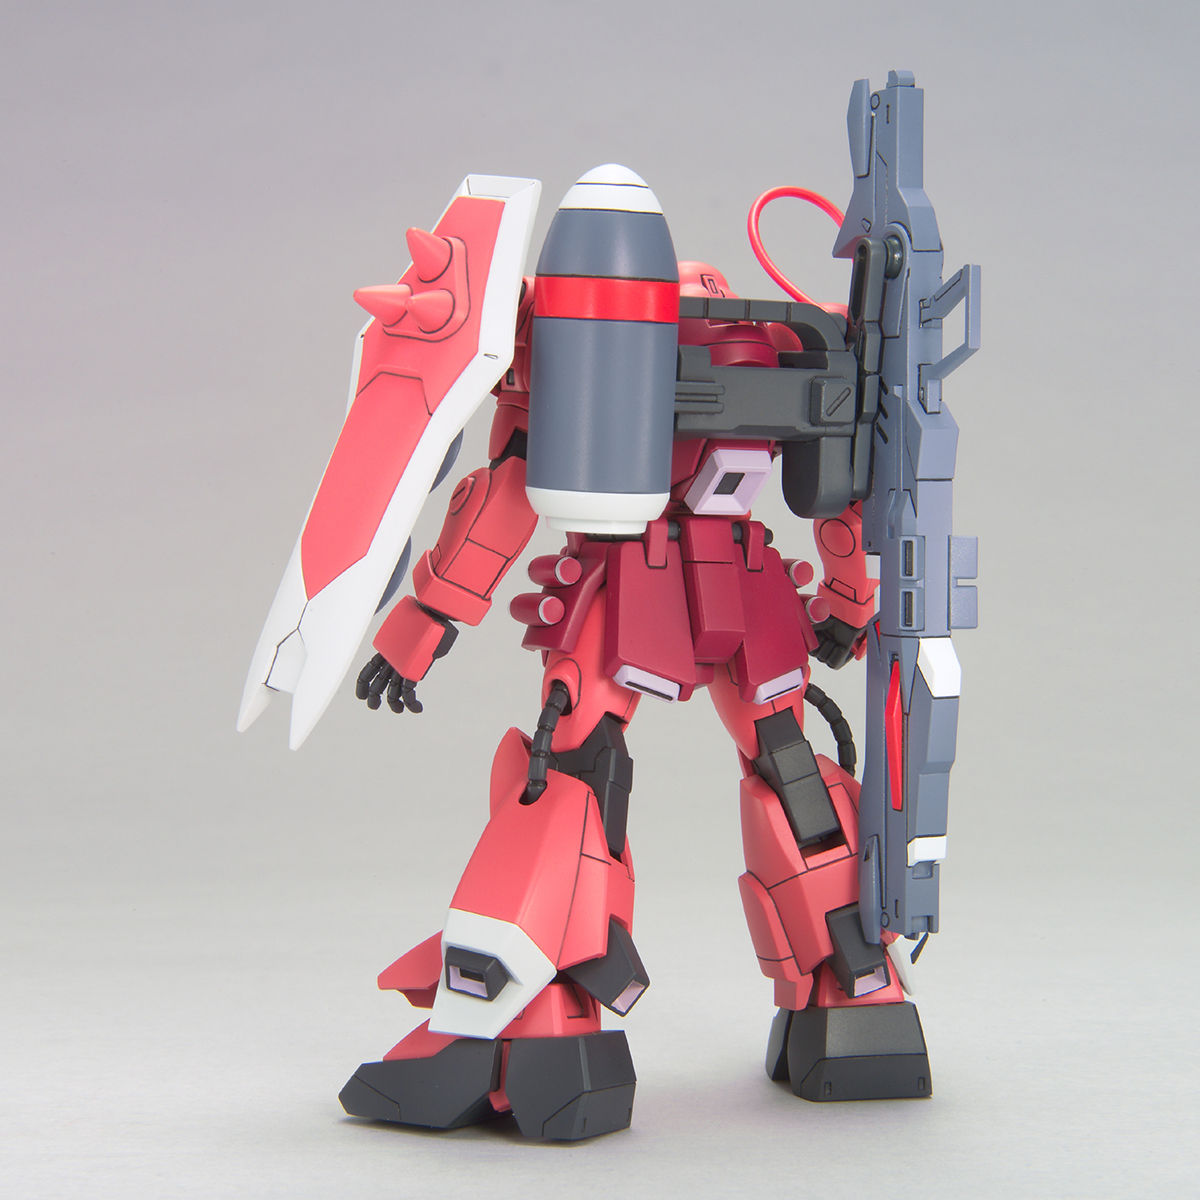 HG Mobile Suit Gundam SEED DESTINY Gunner Zaku Warrior (Lunamaria Hawk exclusive machine) 1/144